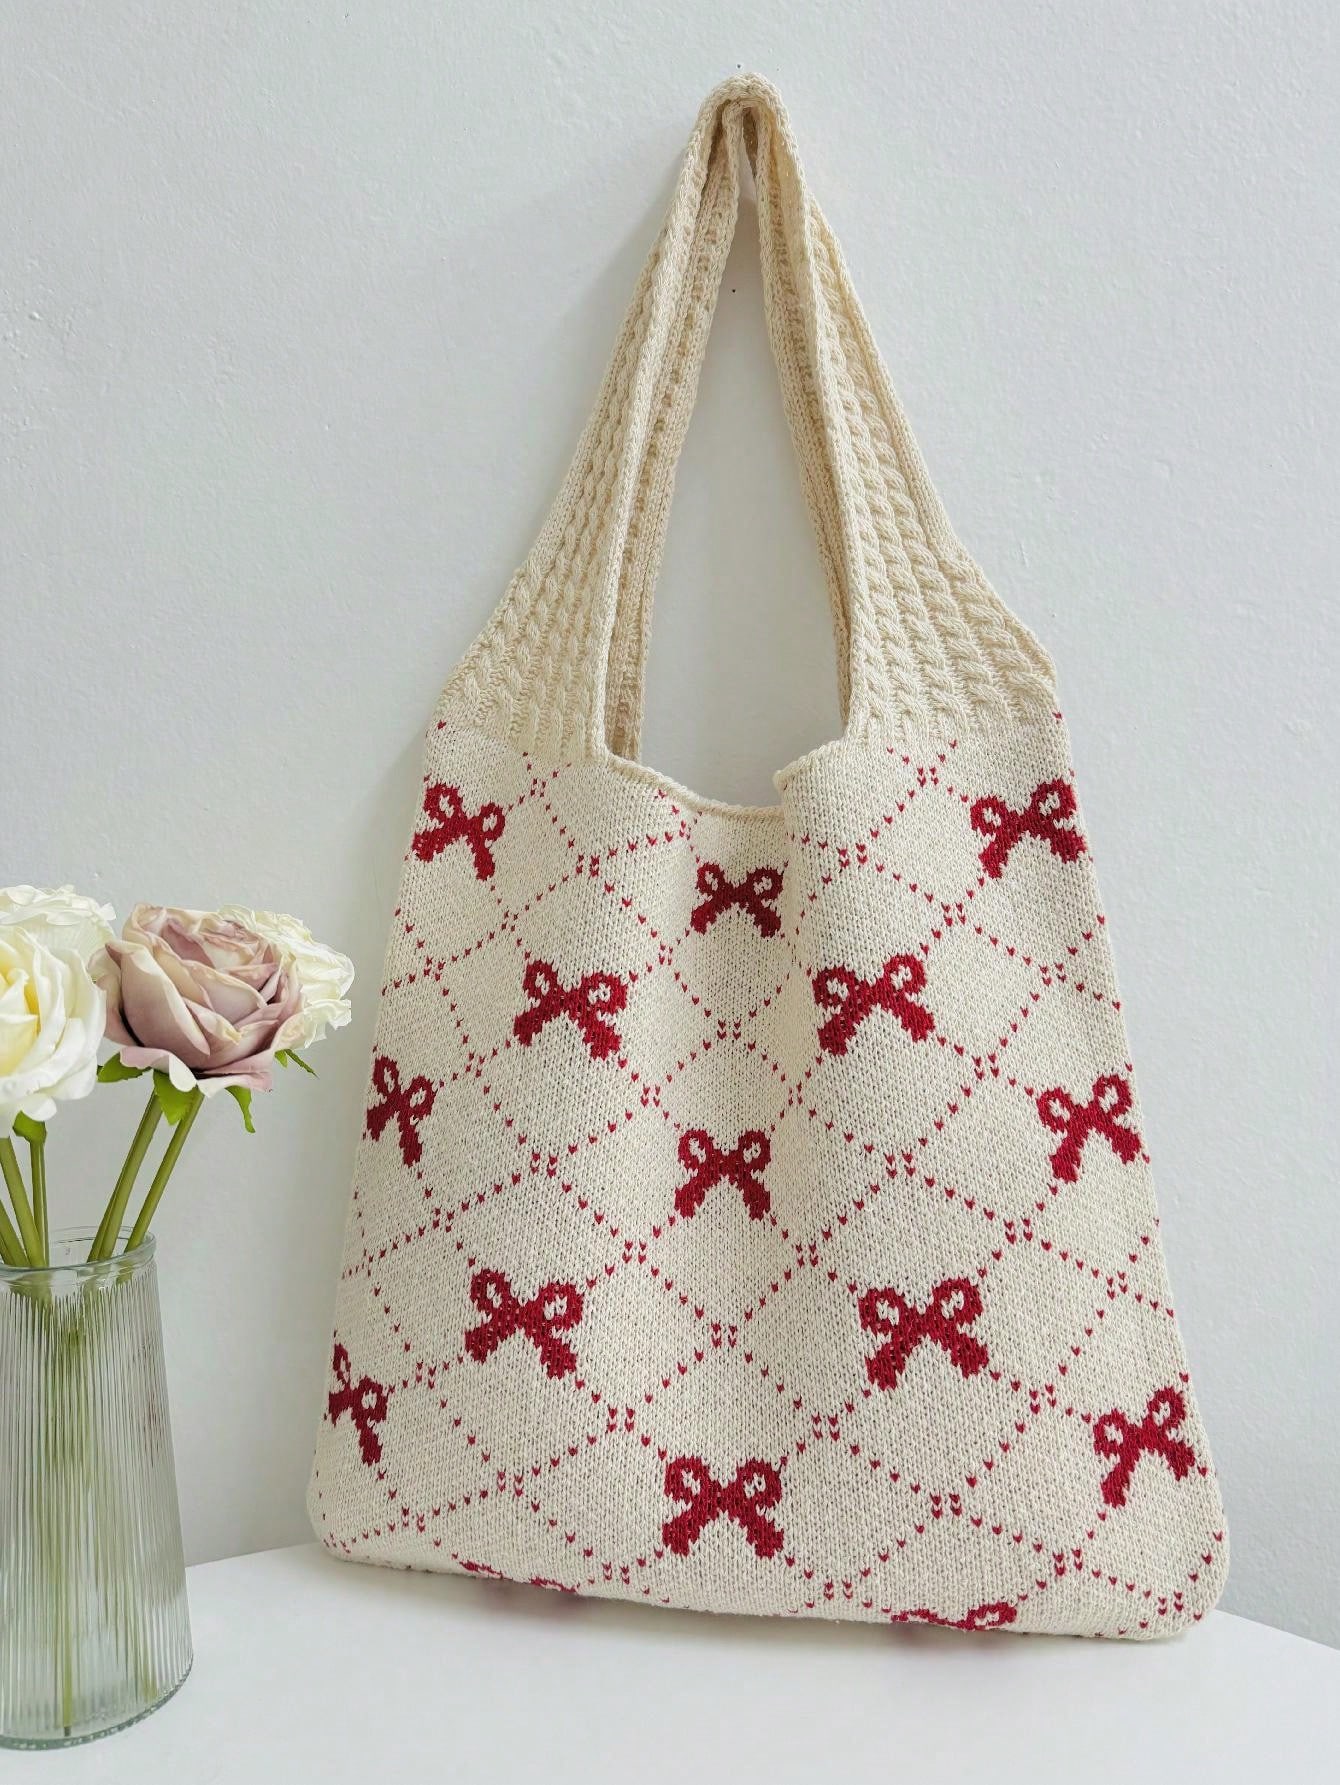 Вязаная большая сумка с бантиком, красный плетеная сумка с кукурузной шелушкой модная сумка клатч праздничная сумка морская пляжная сумка сумка конверт женская сумка быстрая оп